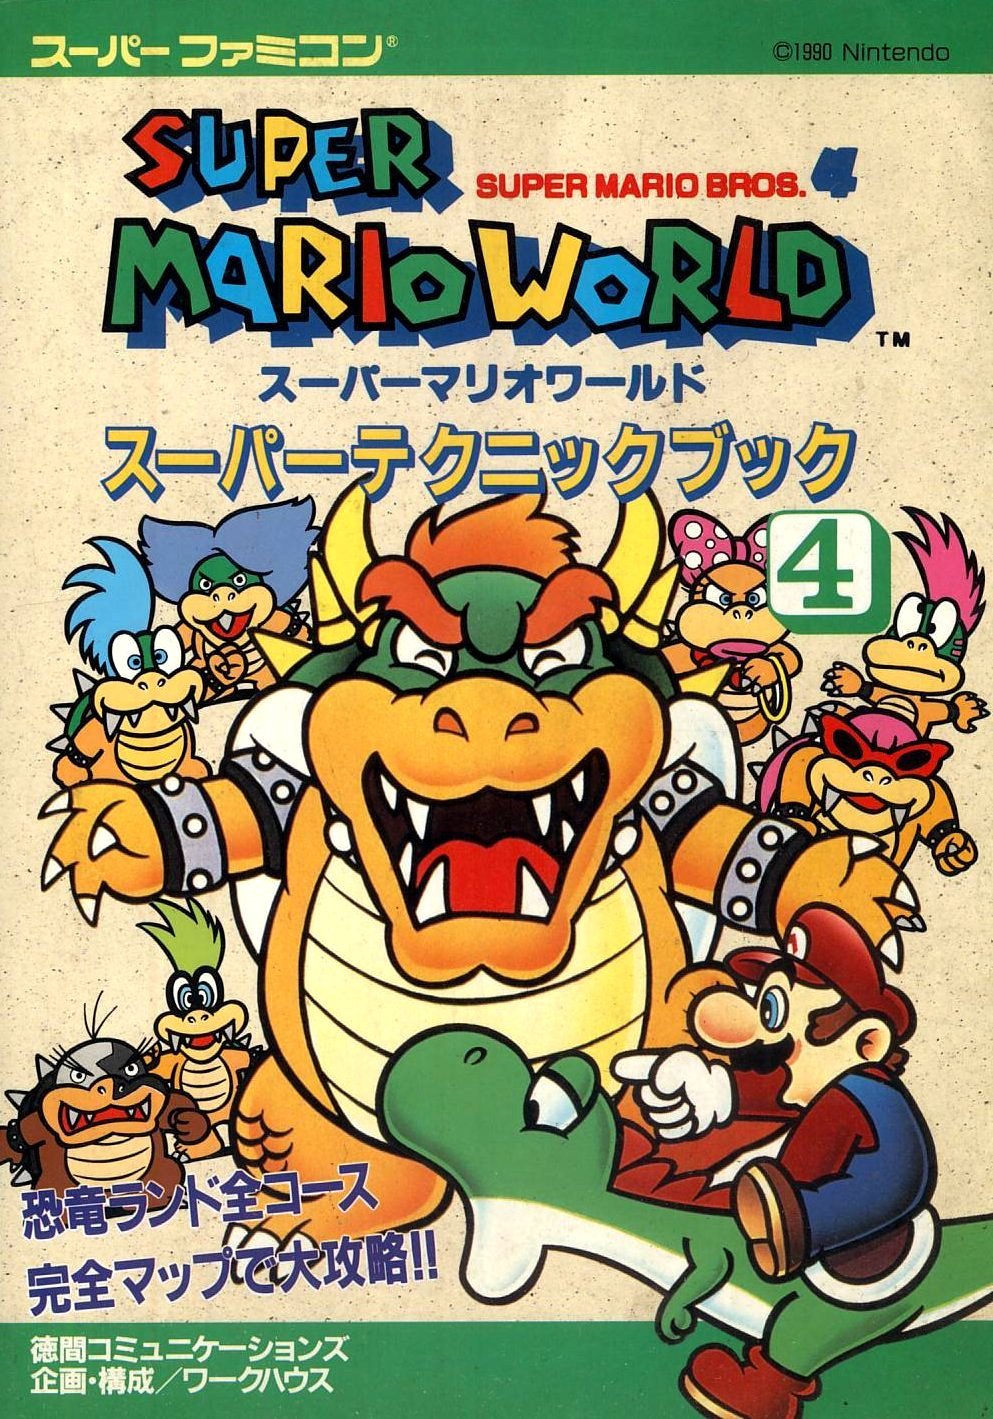 vgjunk: Super Mario World, SNES.